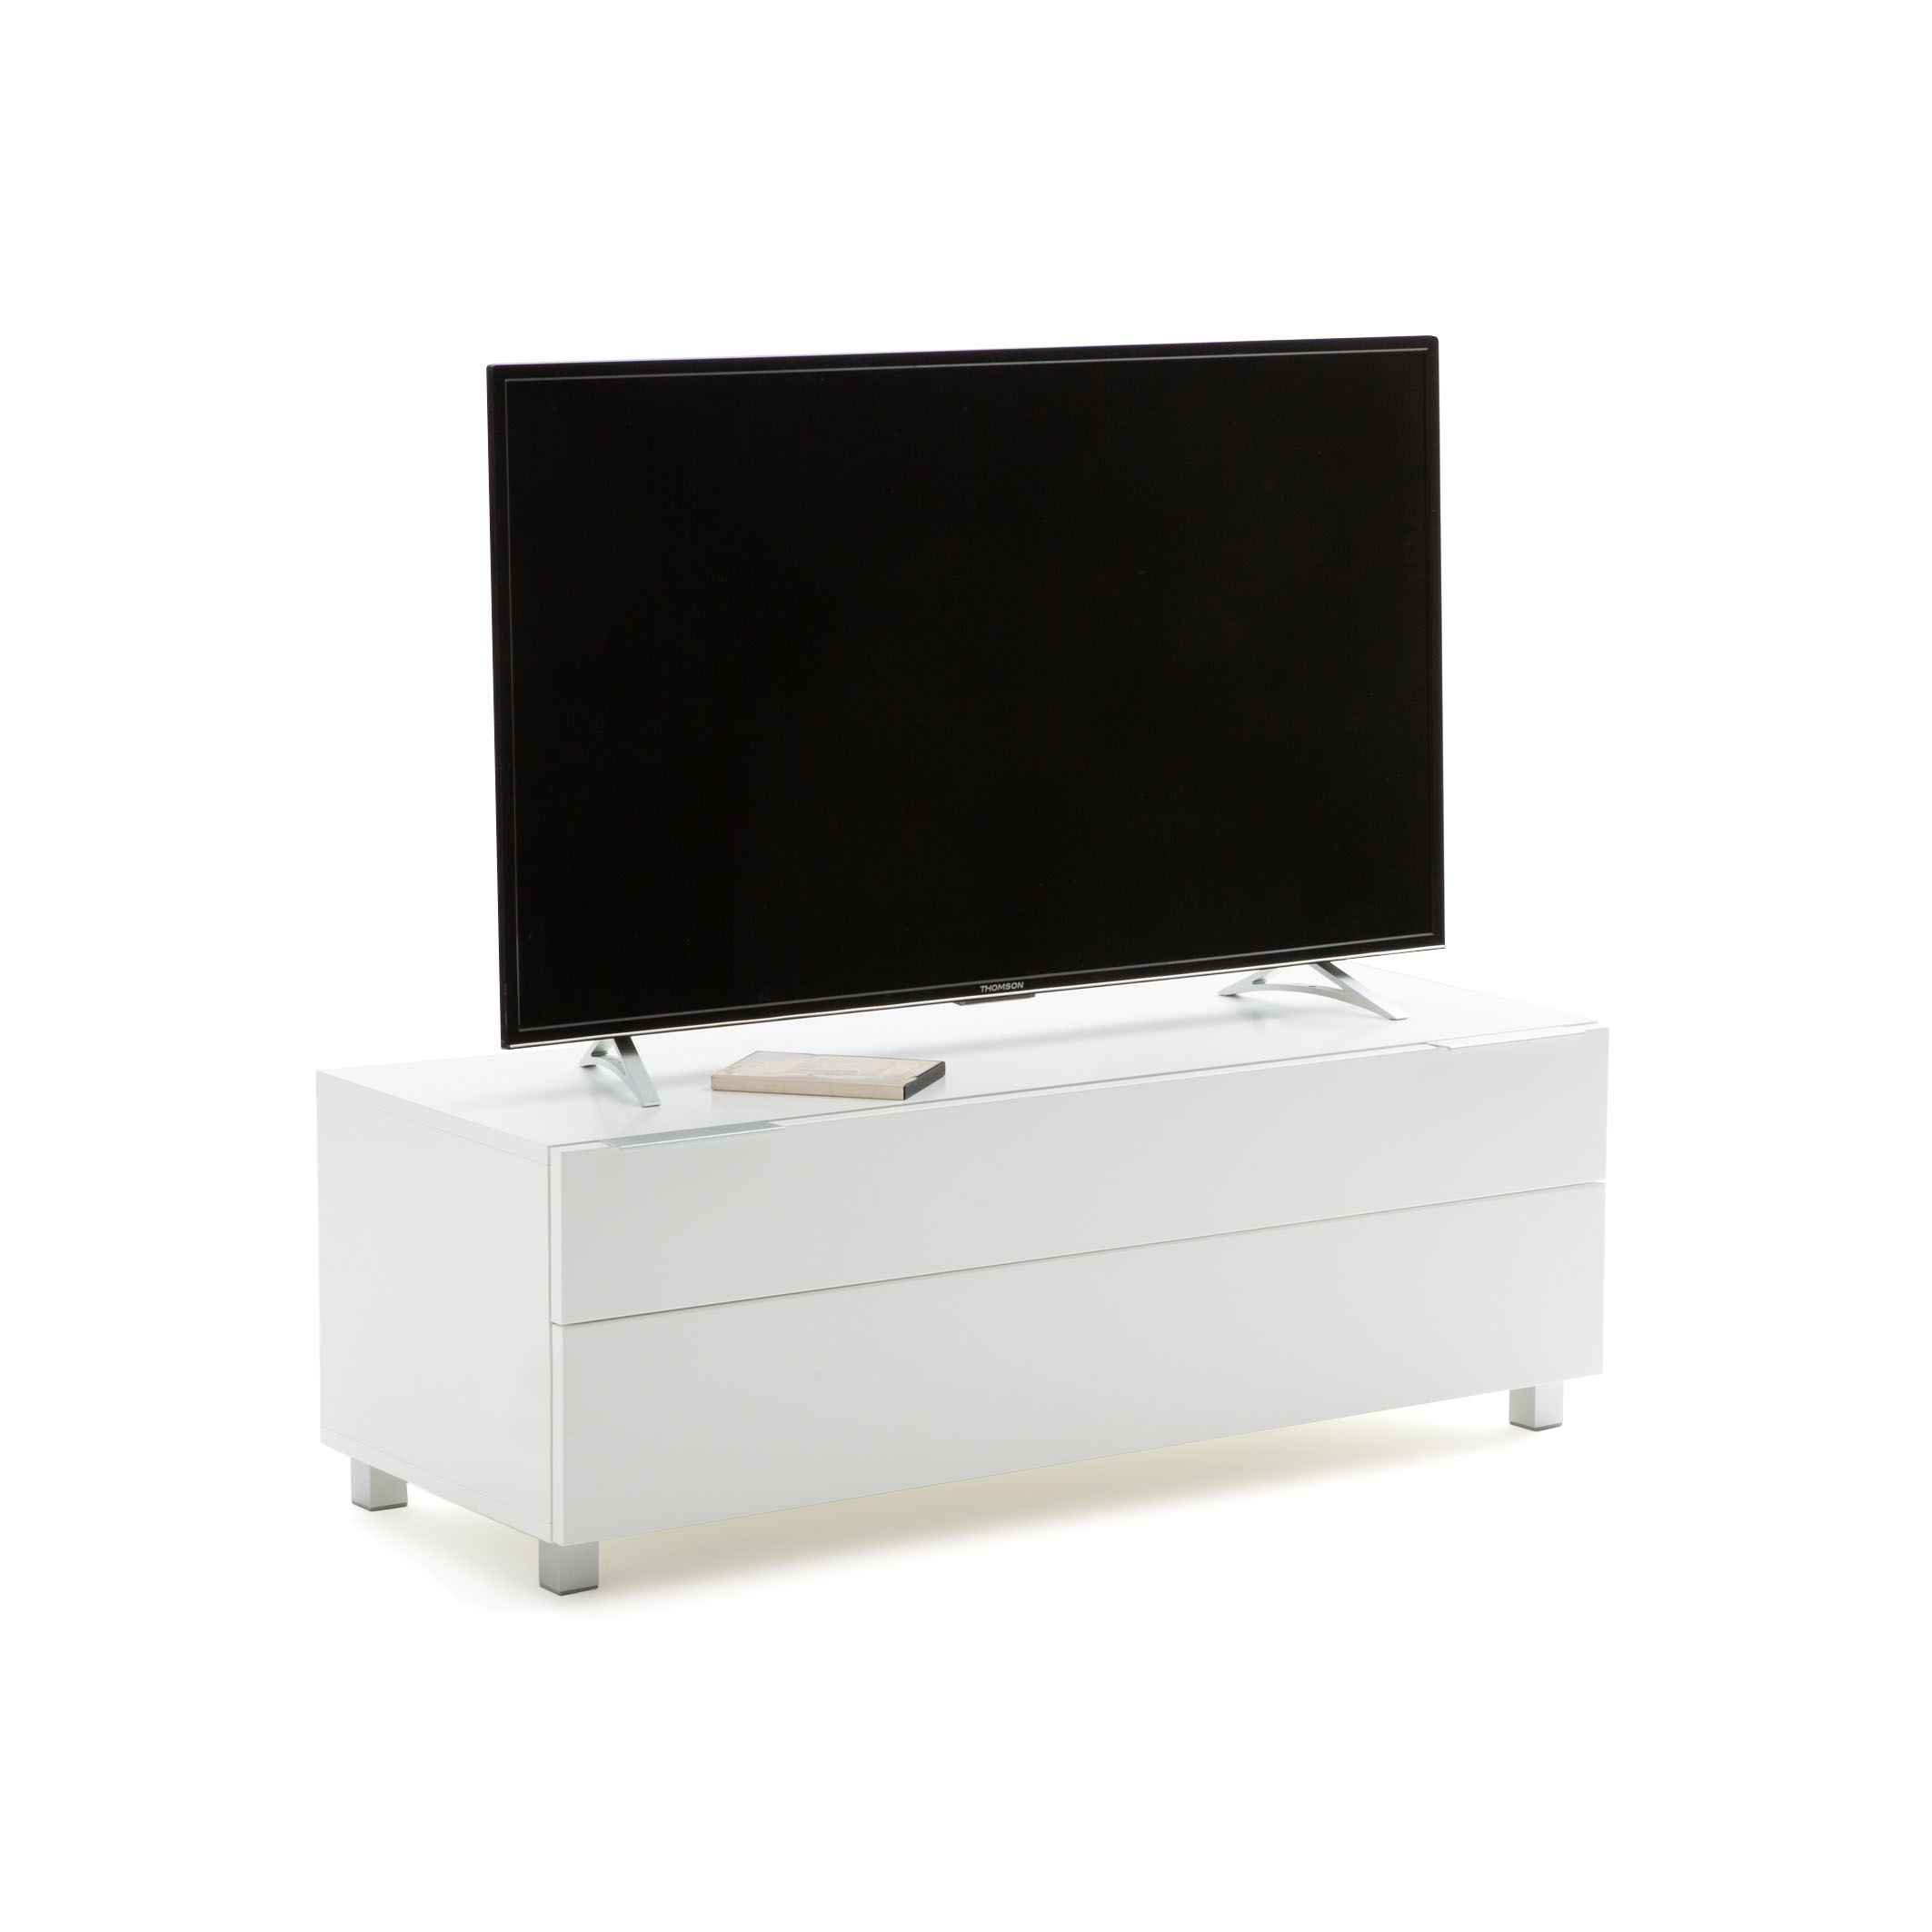 Moeras motor kans Design tv-meubel in wit, norwich wit La Redoute Interieurs | La Redoute